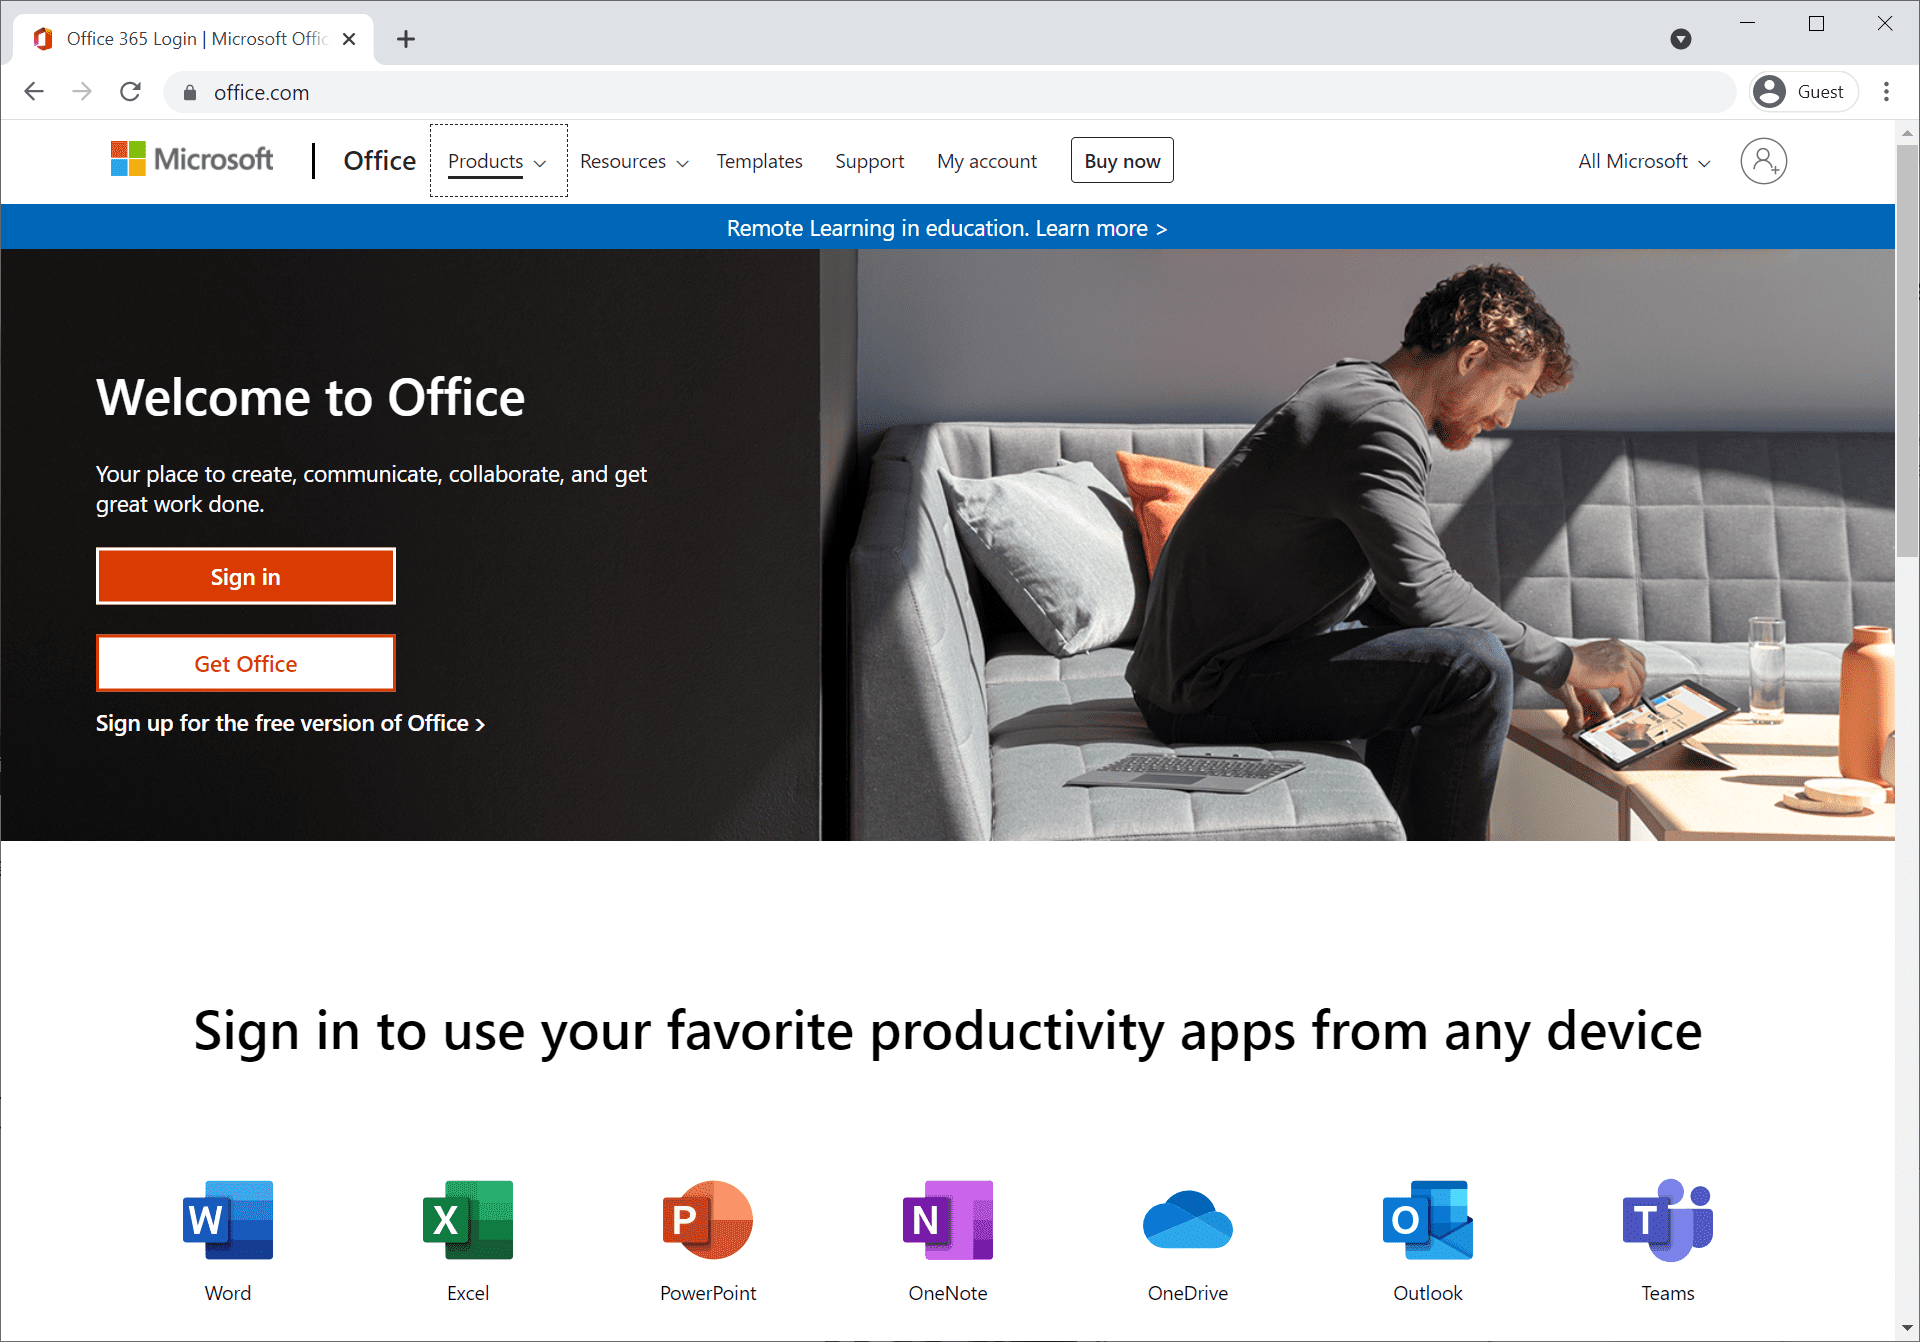 หน้าต่างของ Office.com เพื่อเริ่มต้นใช้งานและสมัครใช้งาน